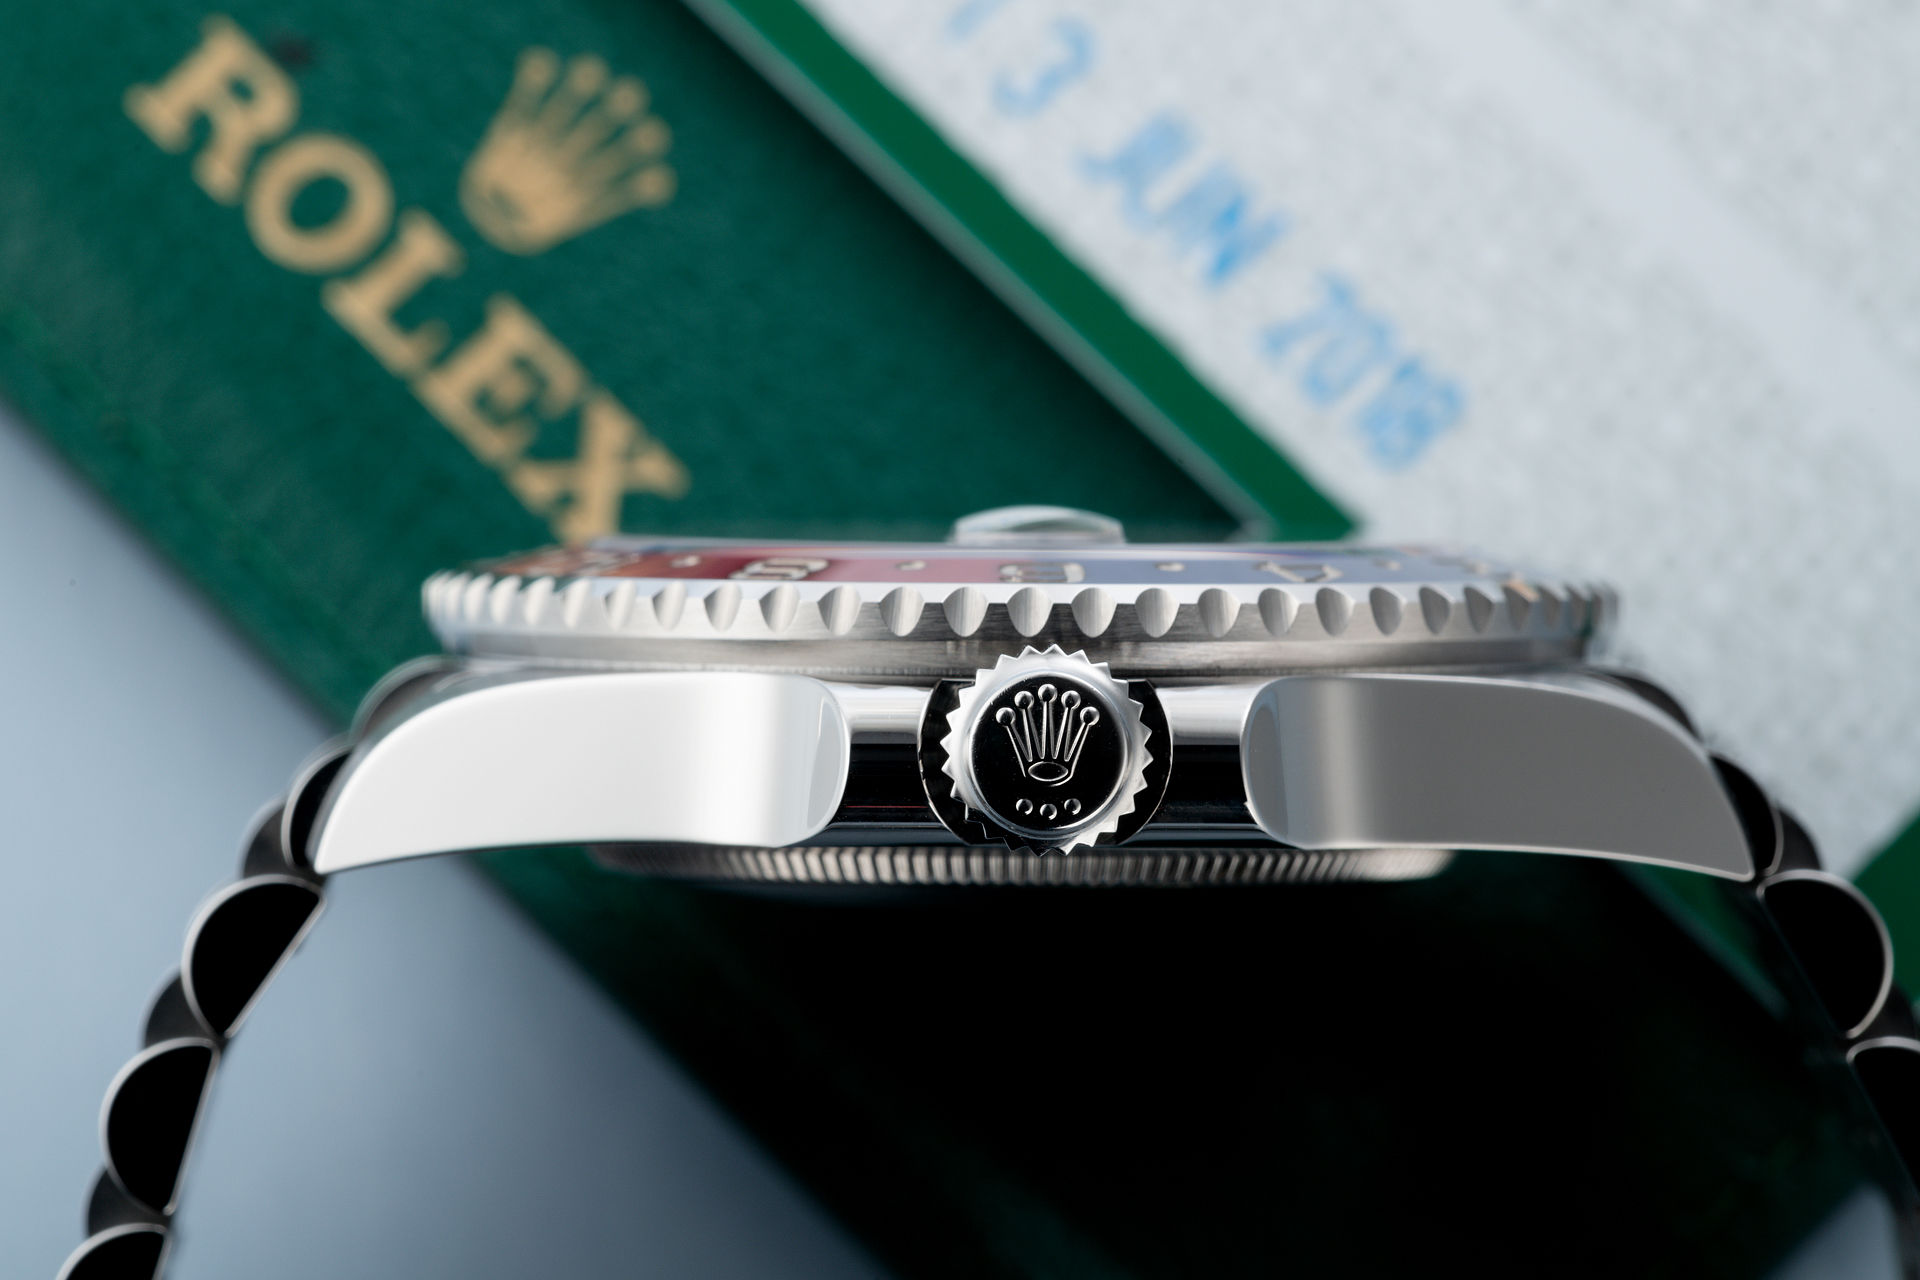 ref 126710BLRO | Rolex Warranty to 2023 | Rolex GMT-Master II